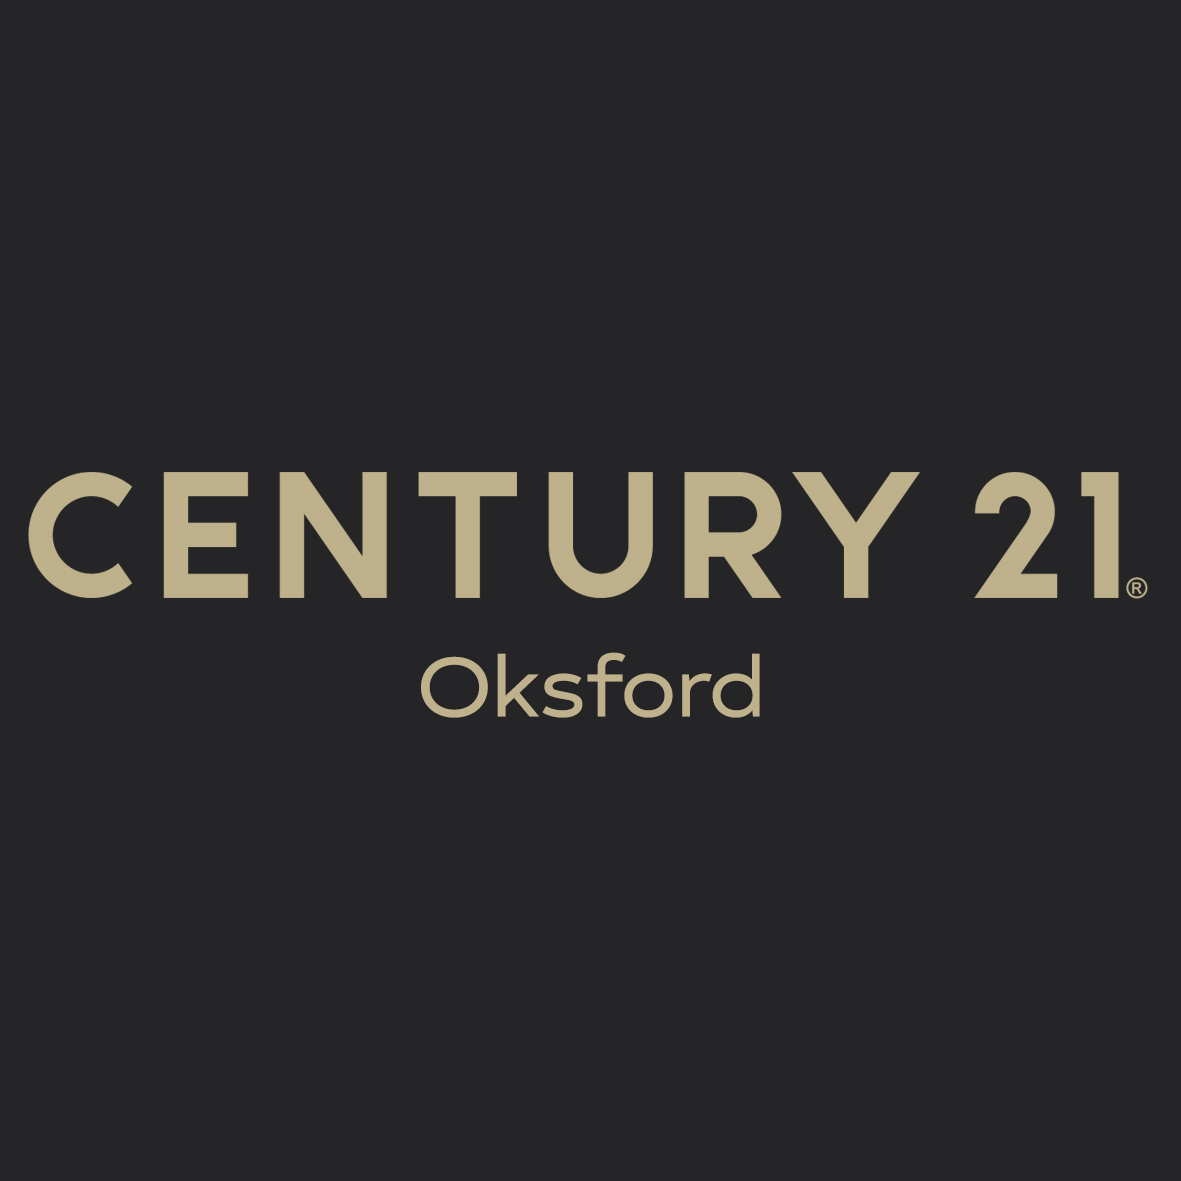 CENTURY 21 Oksford